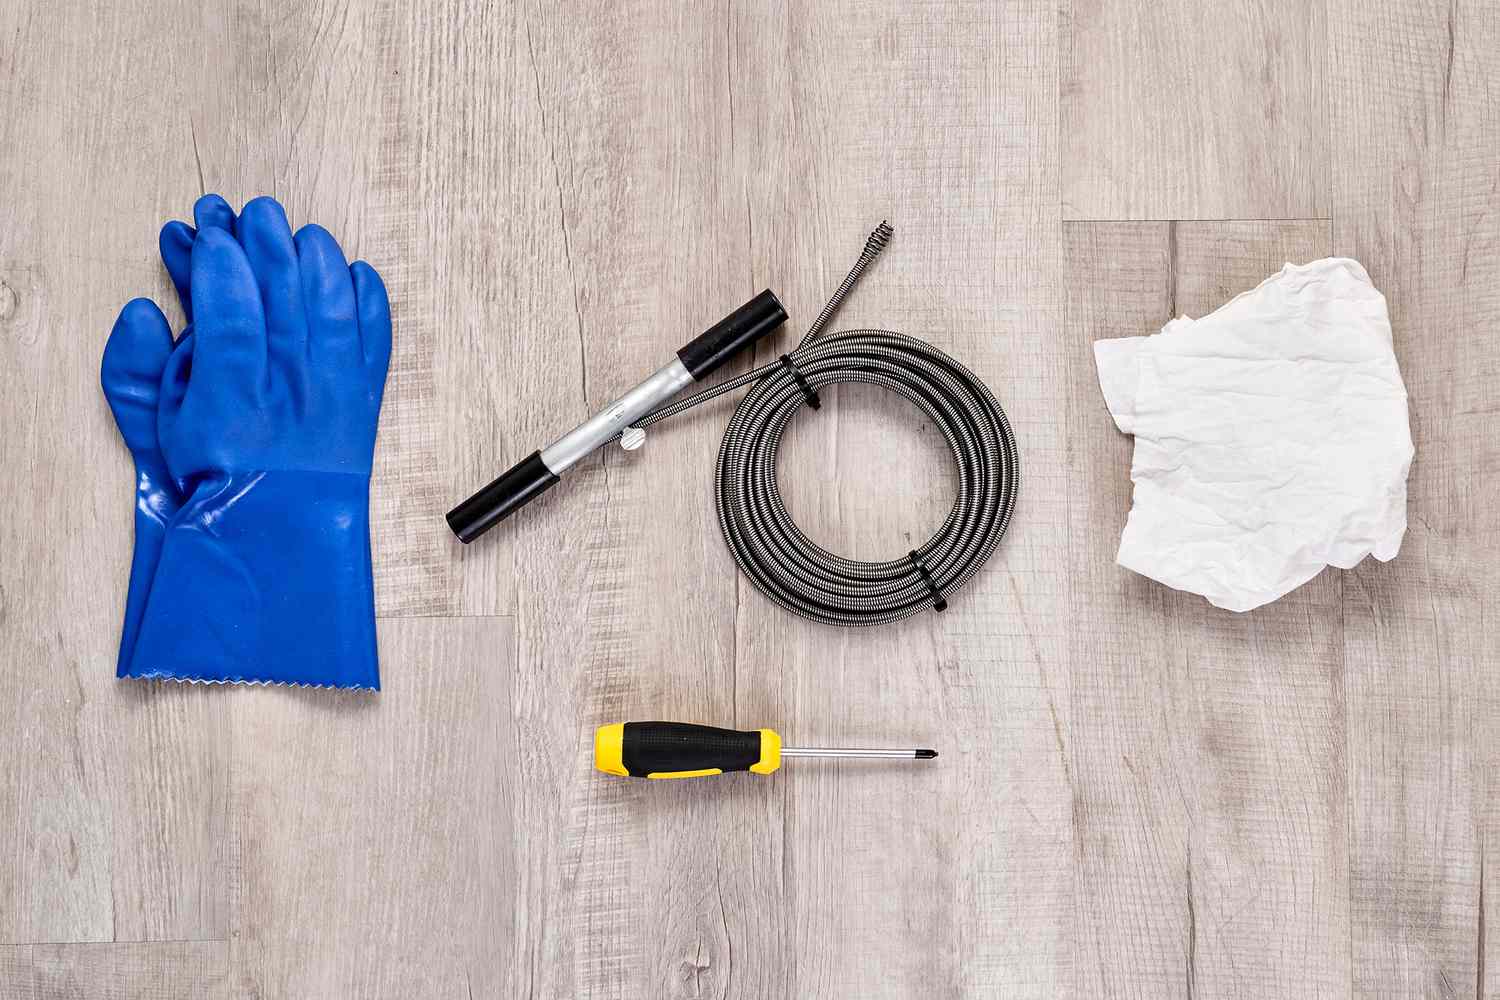 Materialien und Werkzeuge zum Reinigen eines Duschabflusses mit einer Abflussschlange